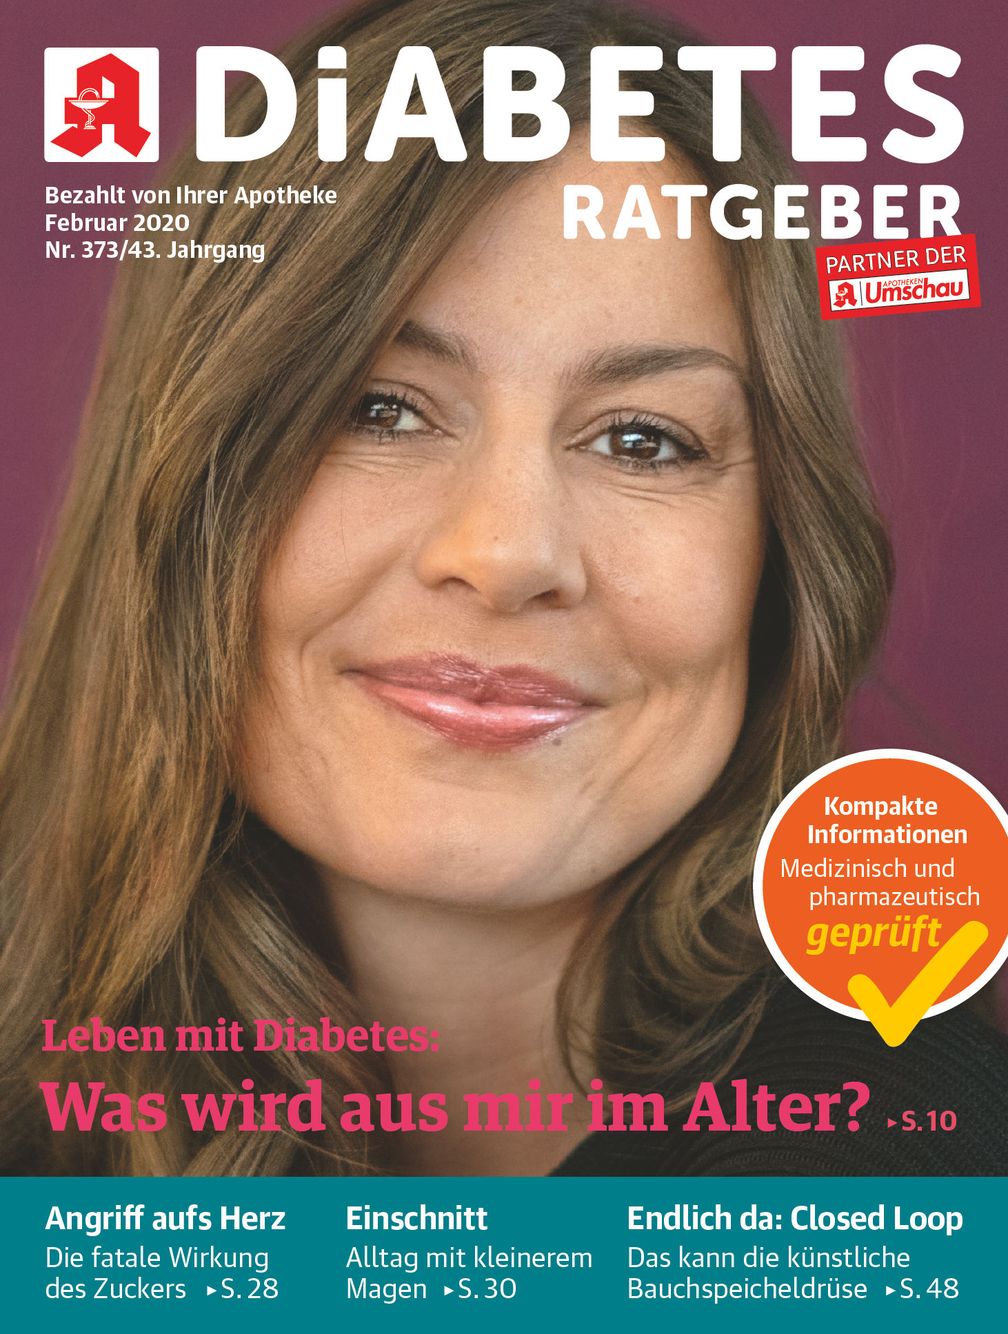 Titelbild Diabetes Ratgeber 2/2020. Bild: "obs/Wort & Bild Verlag - Gesundheitsmeldungen/Wort&Bild Verlag GmbH & Co. KG"